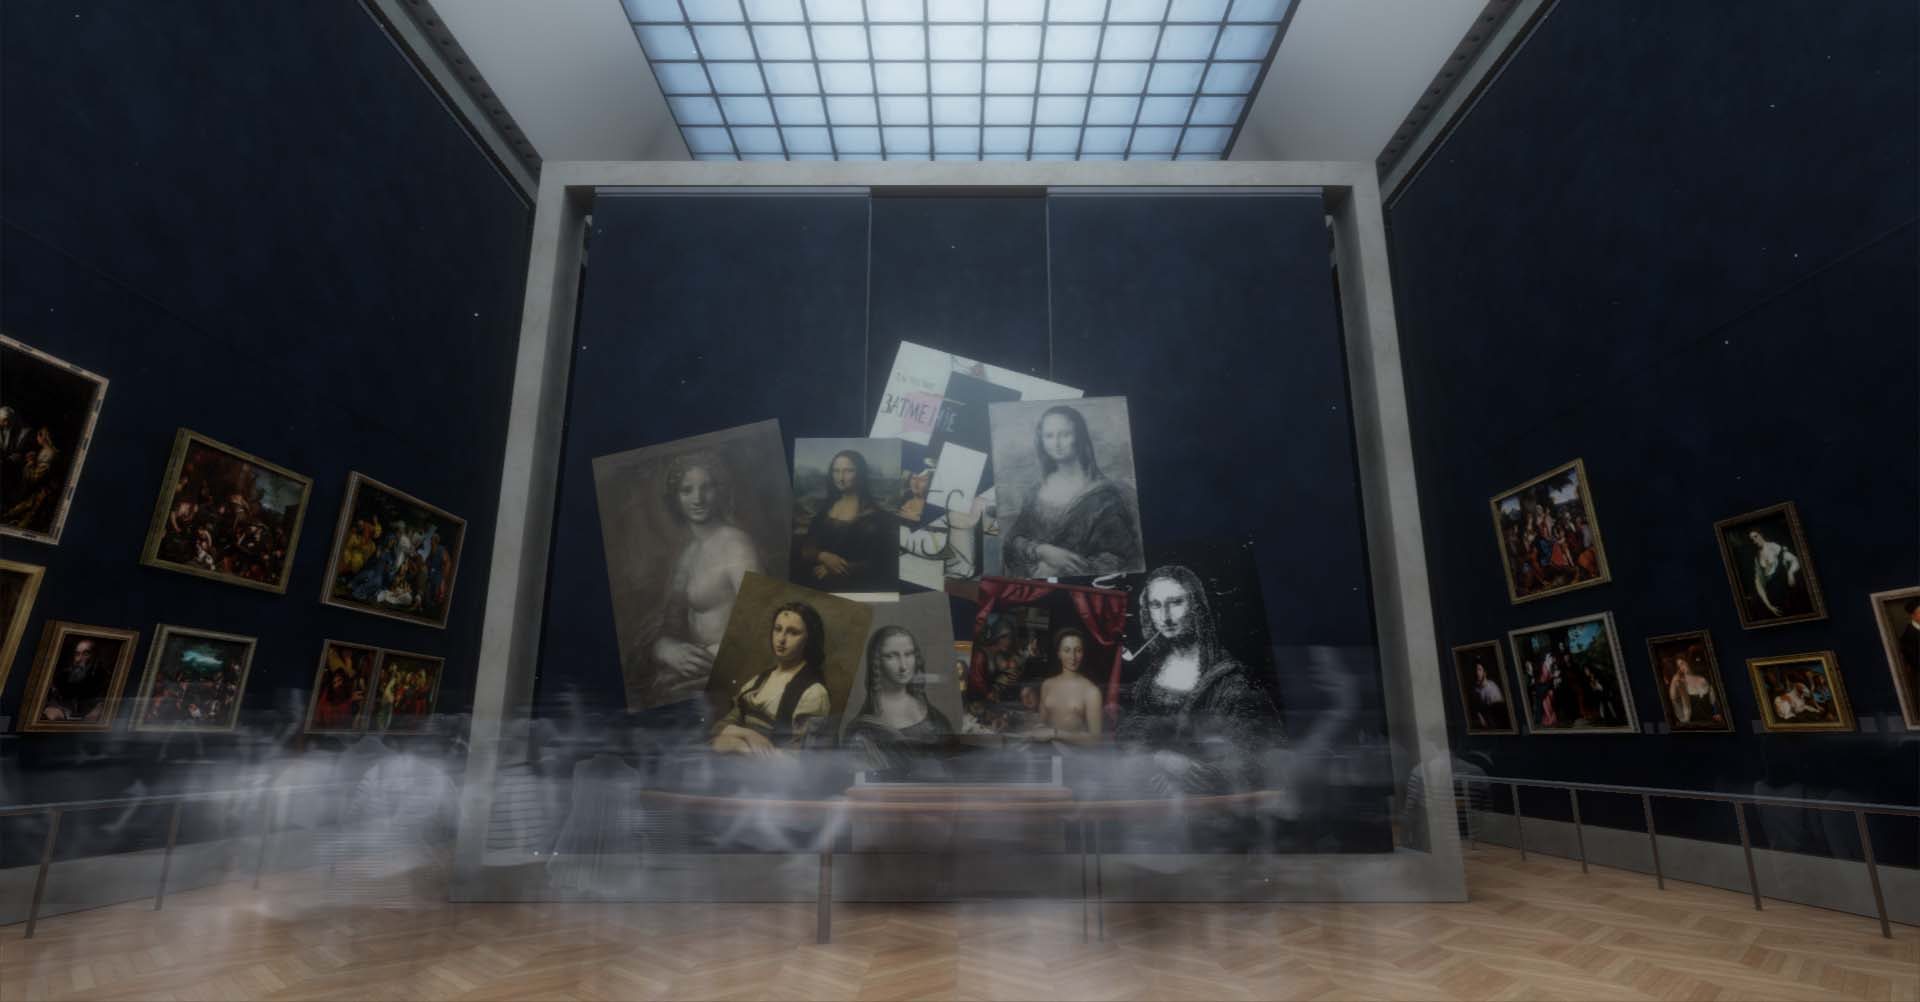 Vue de l'installation en réalité virtuelle de “La Joconde” au musée du Louvre © Emissive and HTC Vive Arts